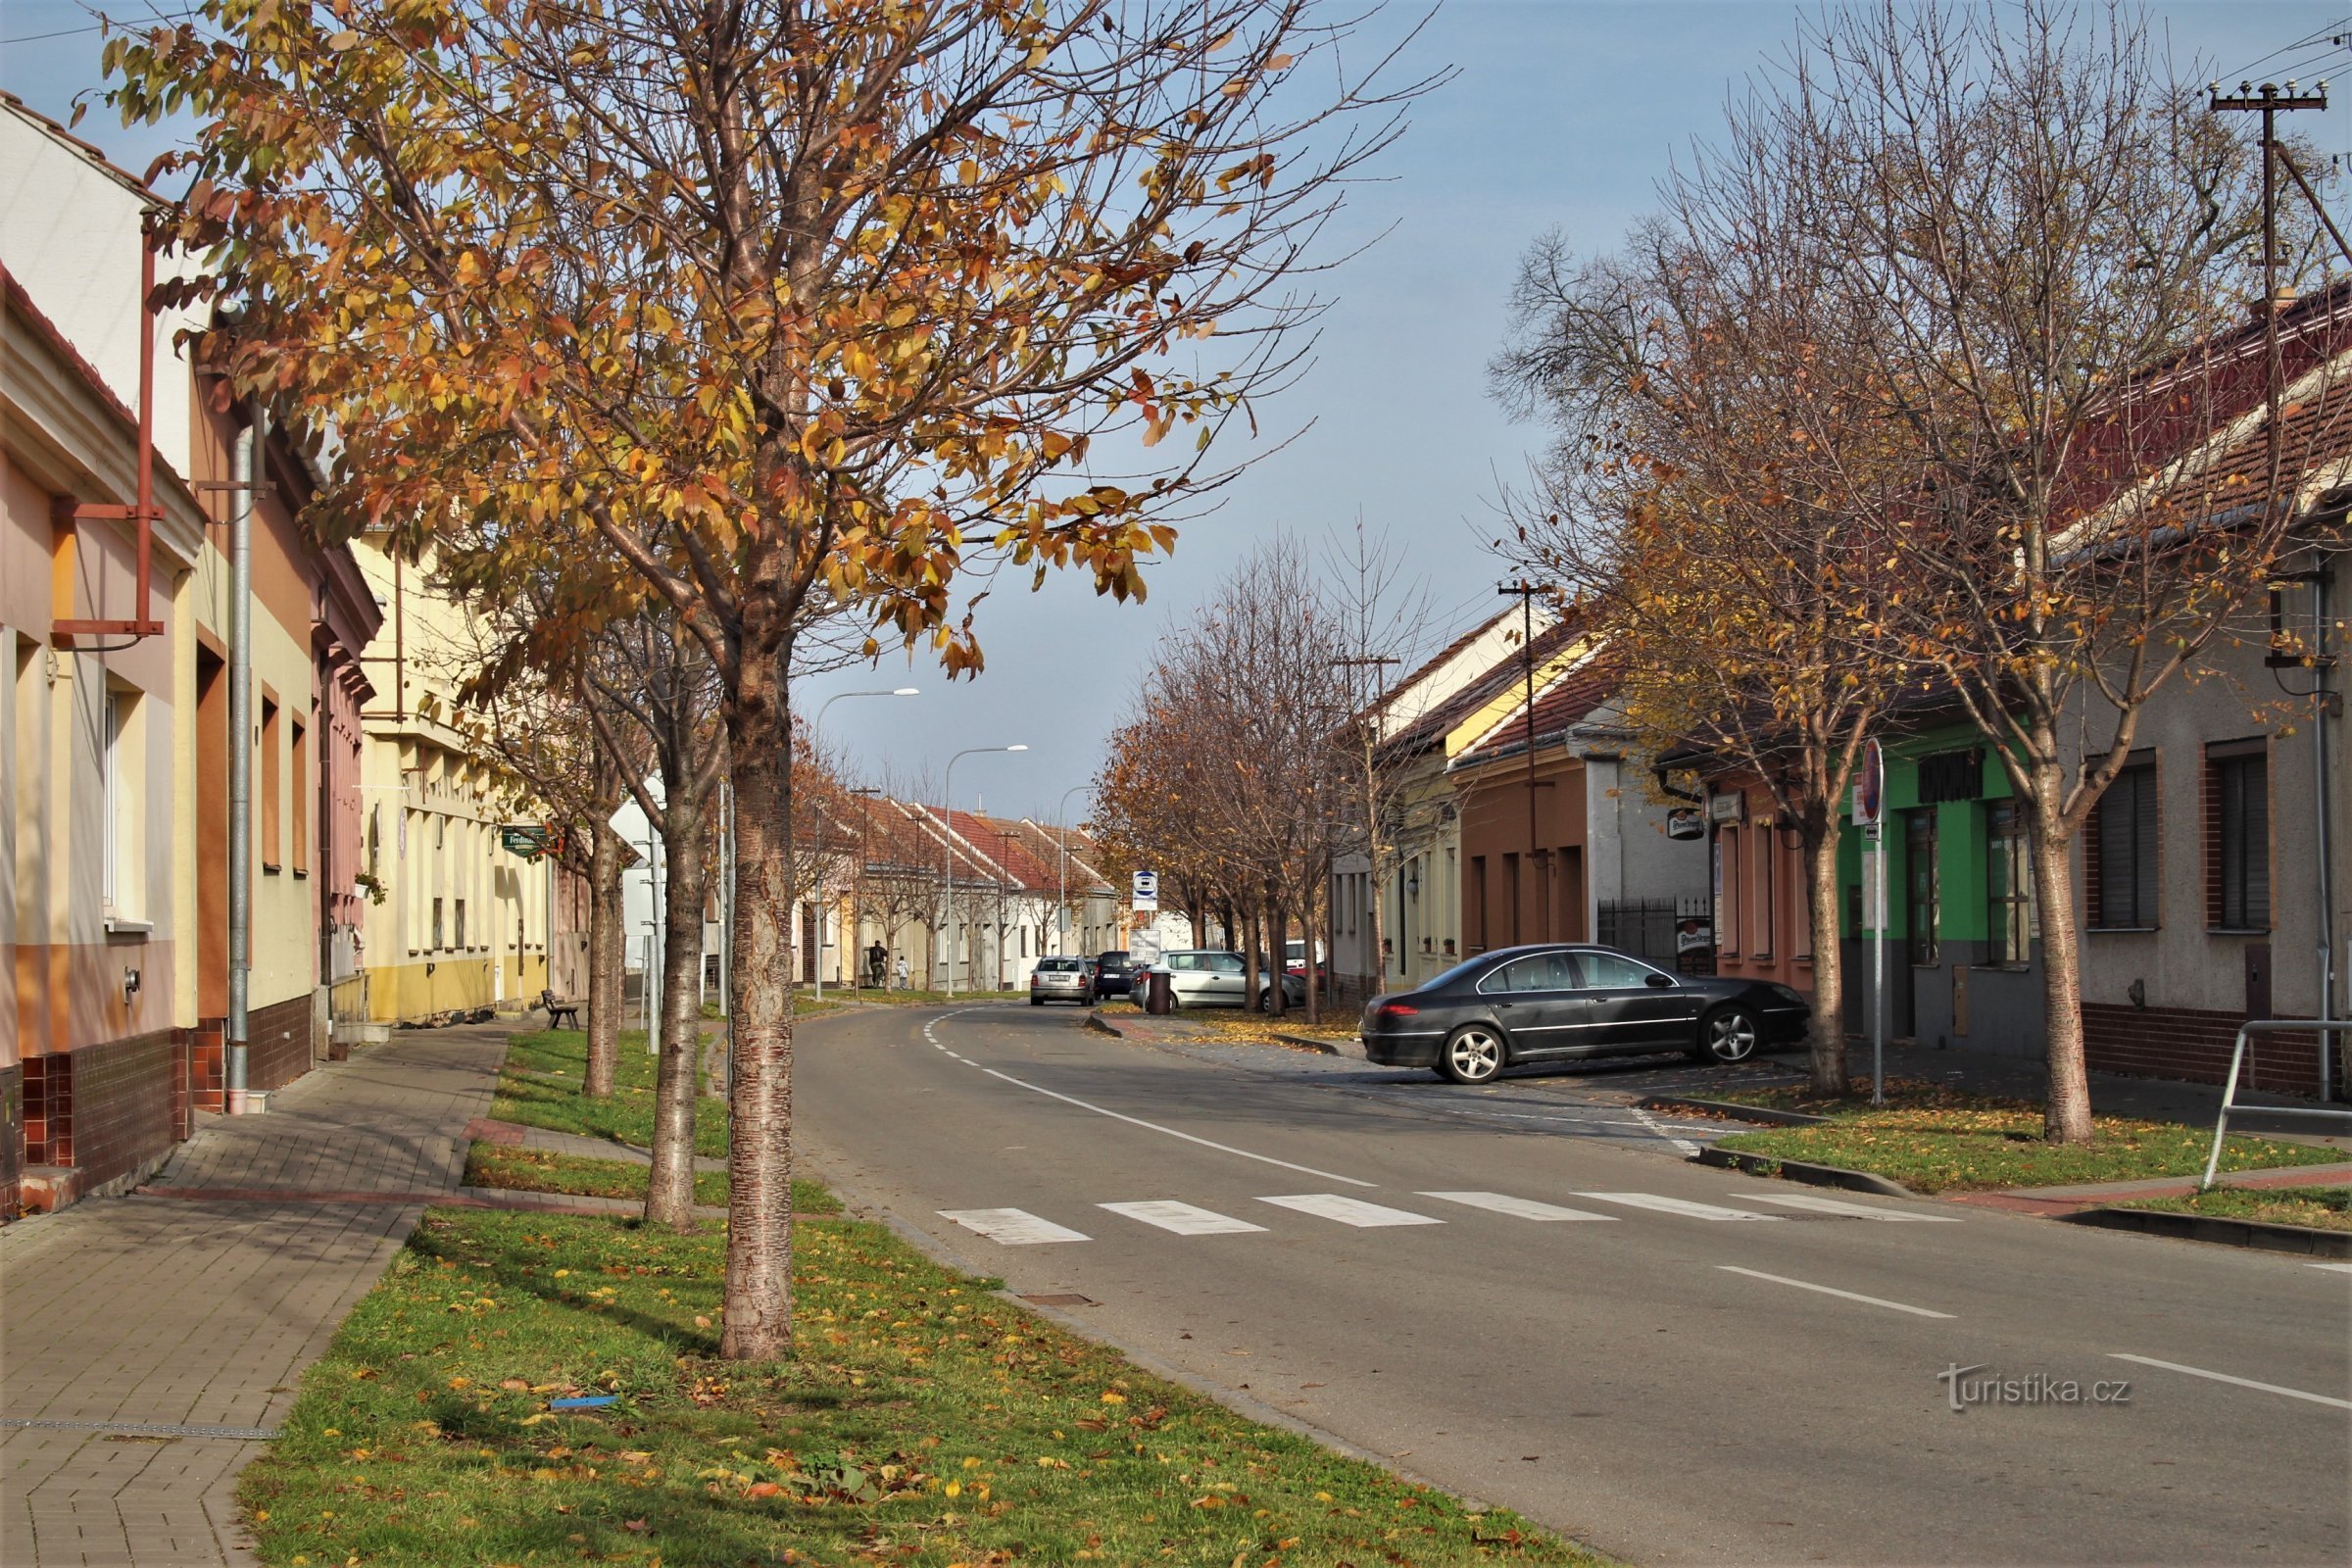 De hoofdstraat in Podivín